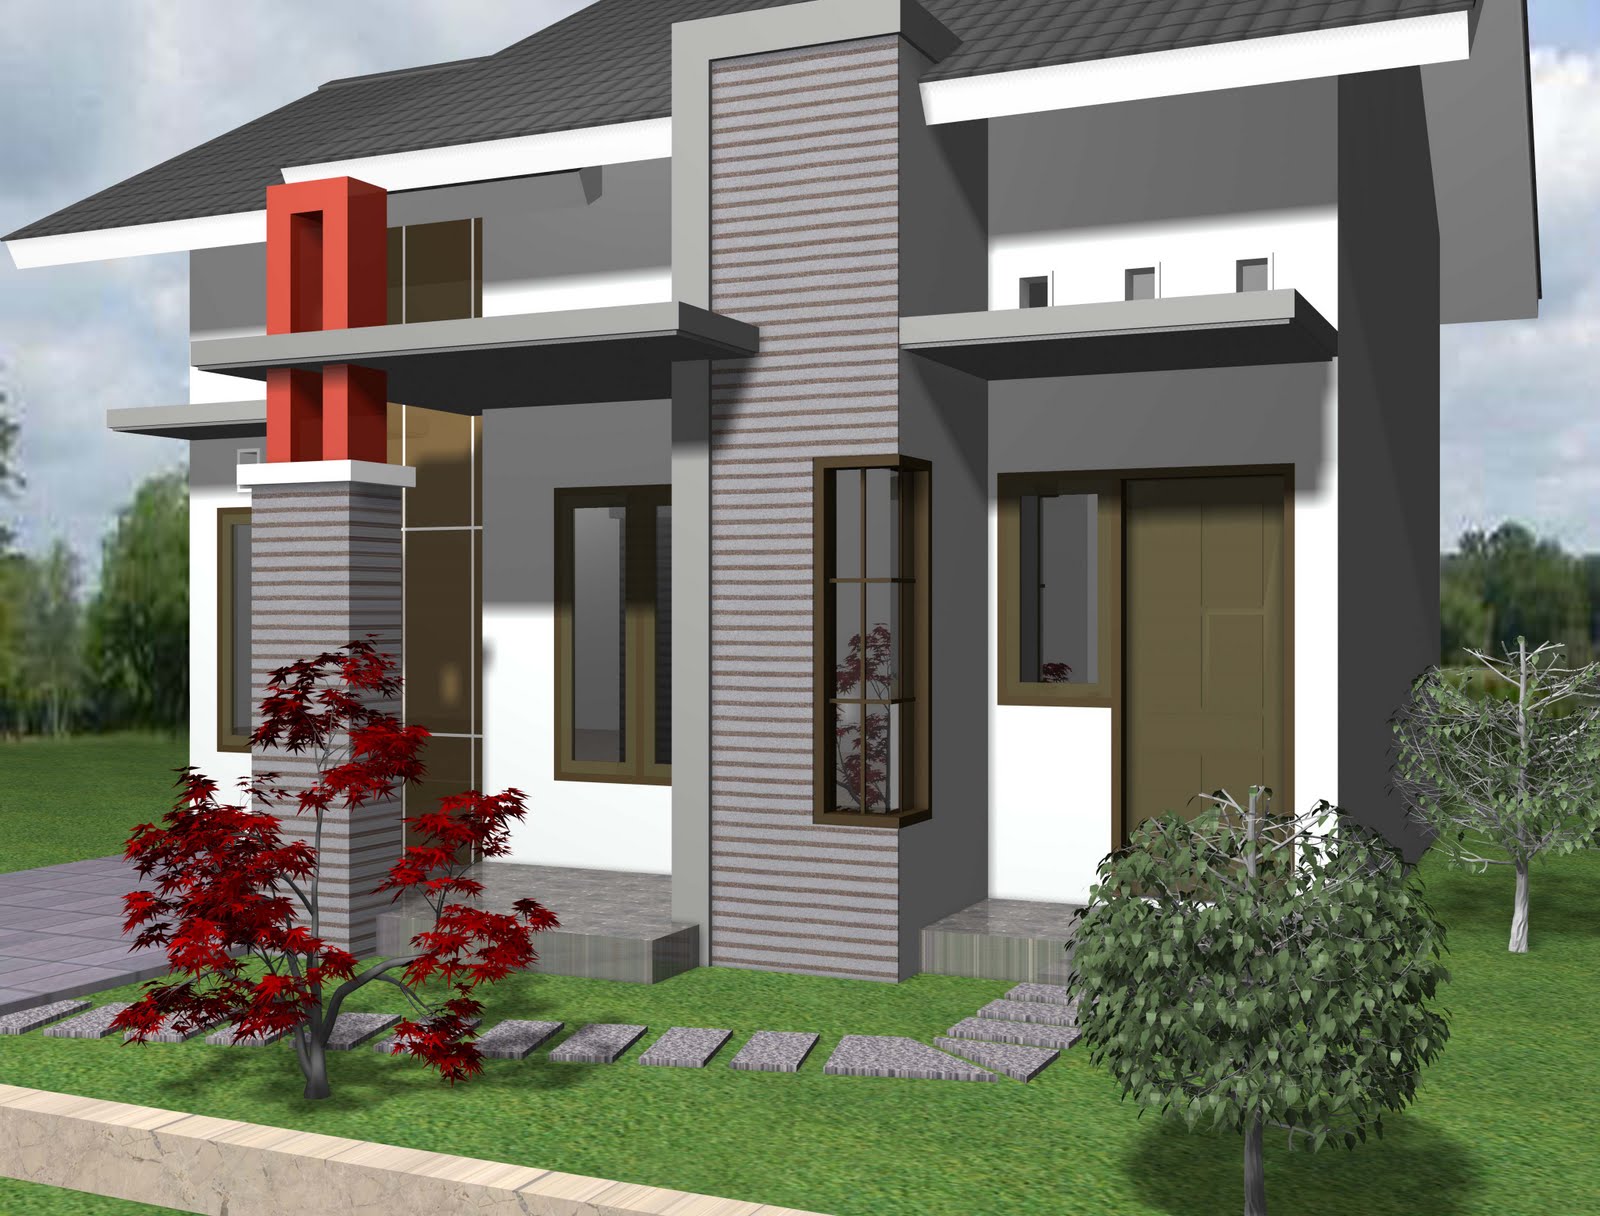 Desain Rumah Minimalis Type 21 Terbaru 2014 Aga Kewl